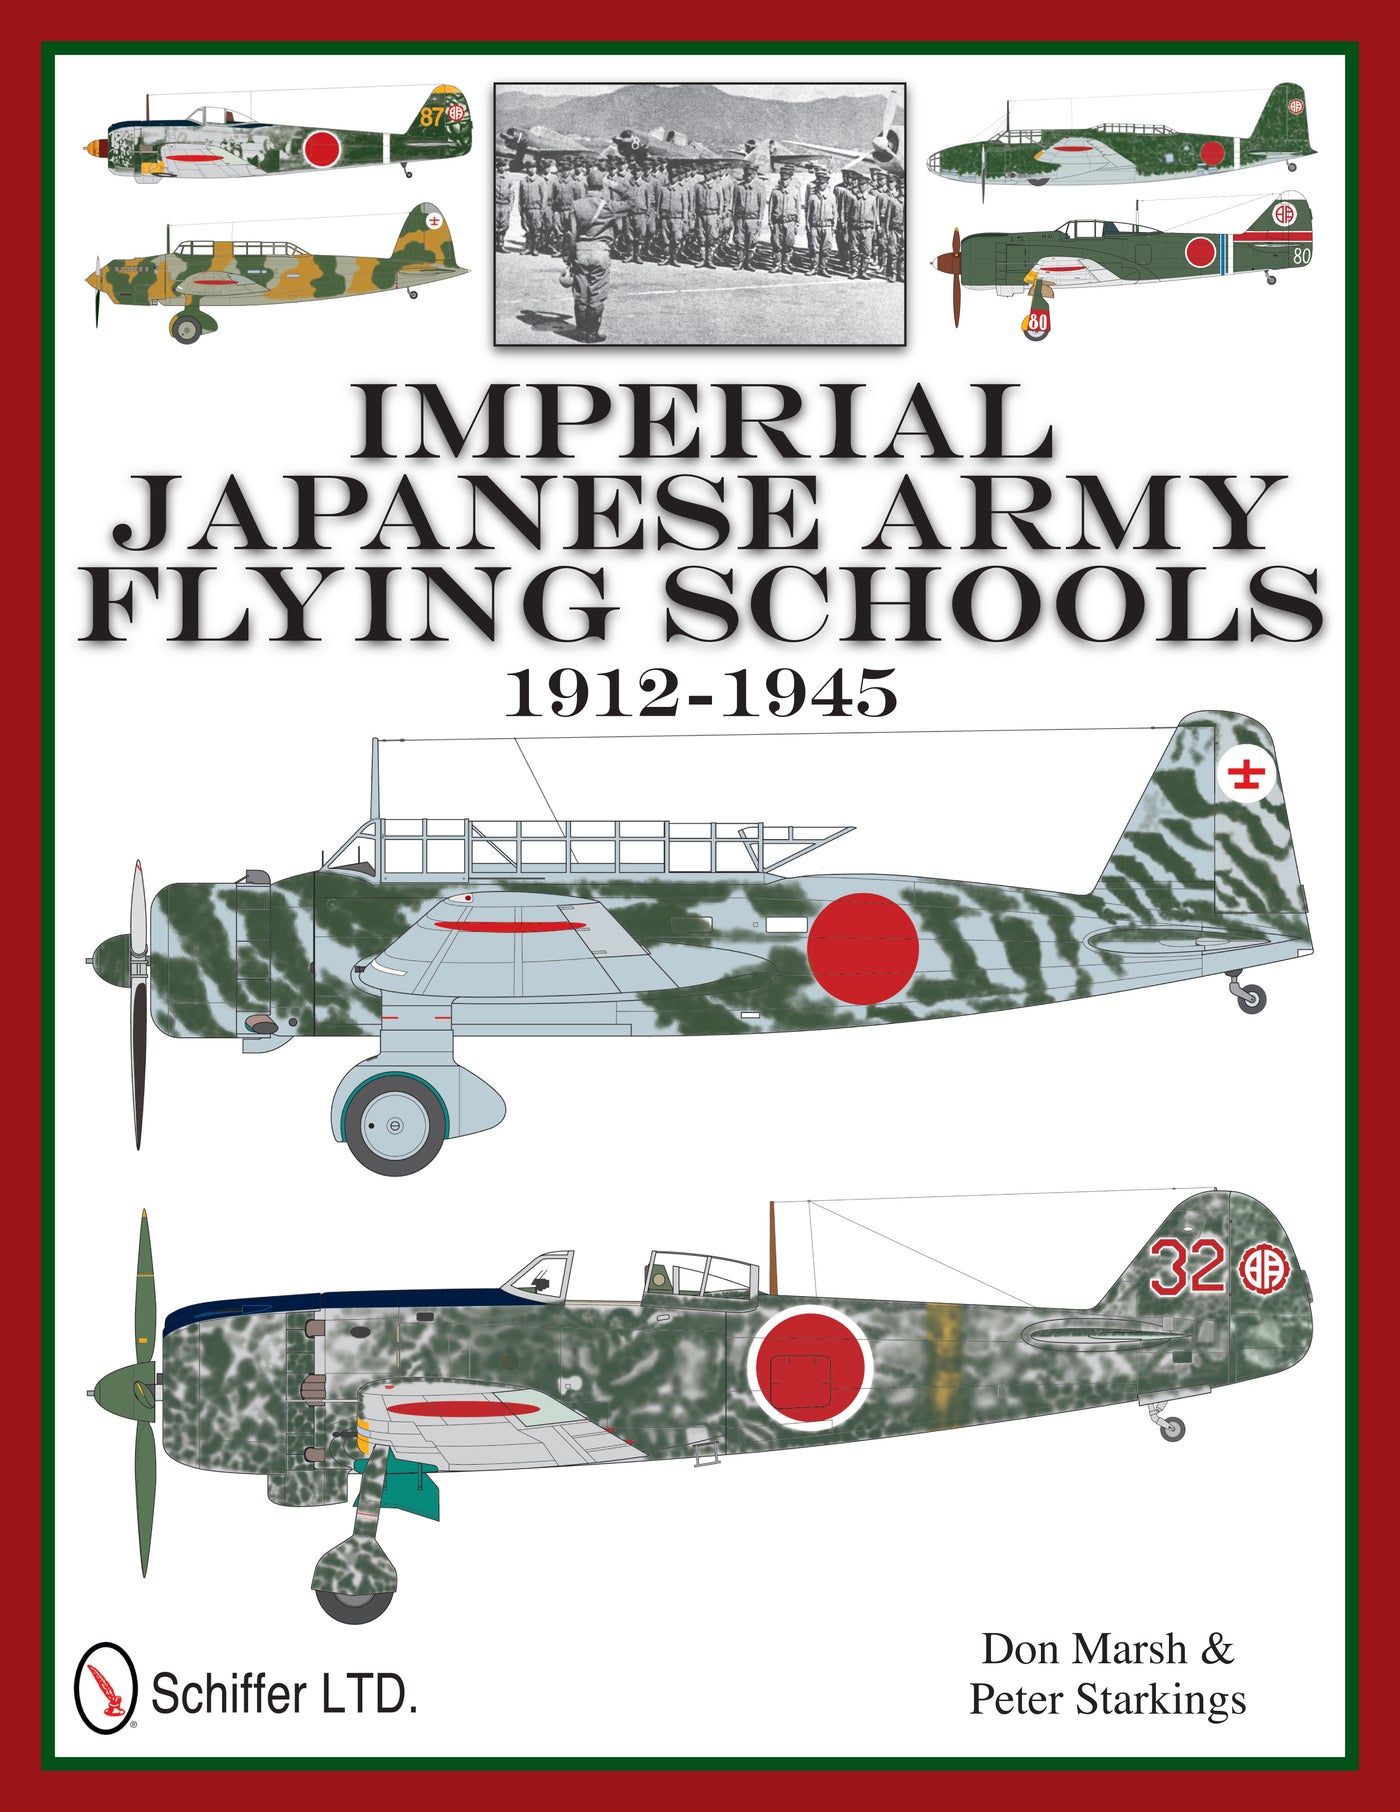 Flugschulen der kaiserlichen japanischen Armee 1912-1945 